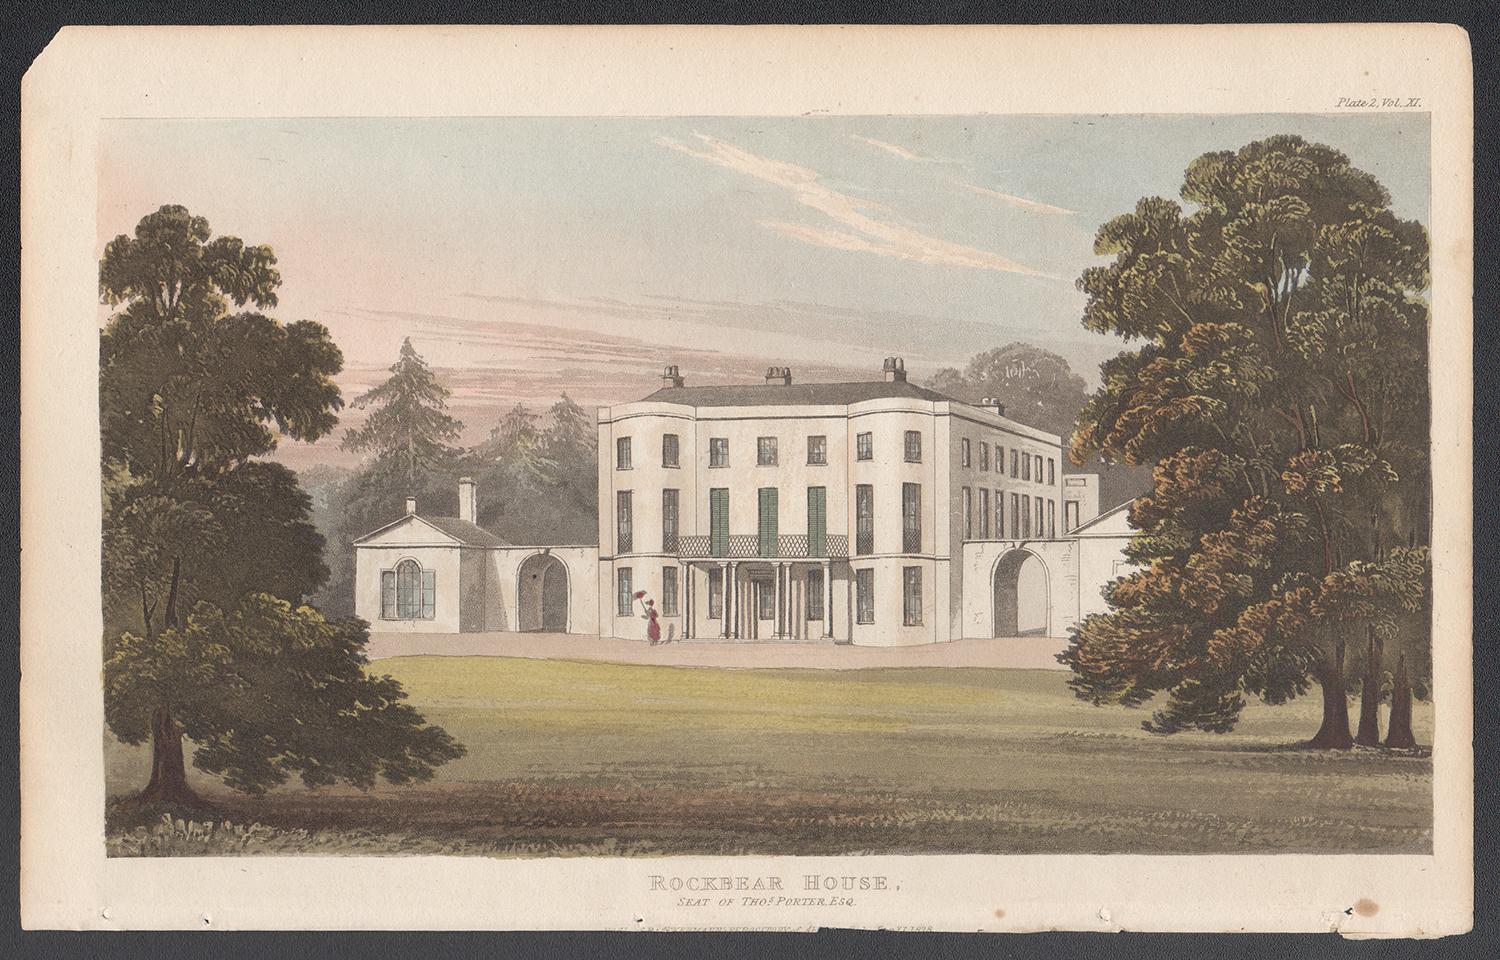 Rockbear House, Devon, aquatinte de couleur d'une maison de campagne de style Régence anglaise, 1818 - Print de Unknown